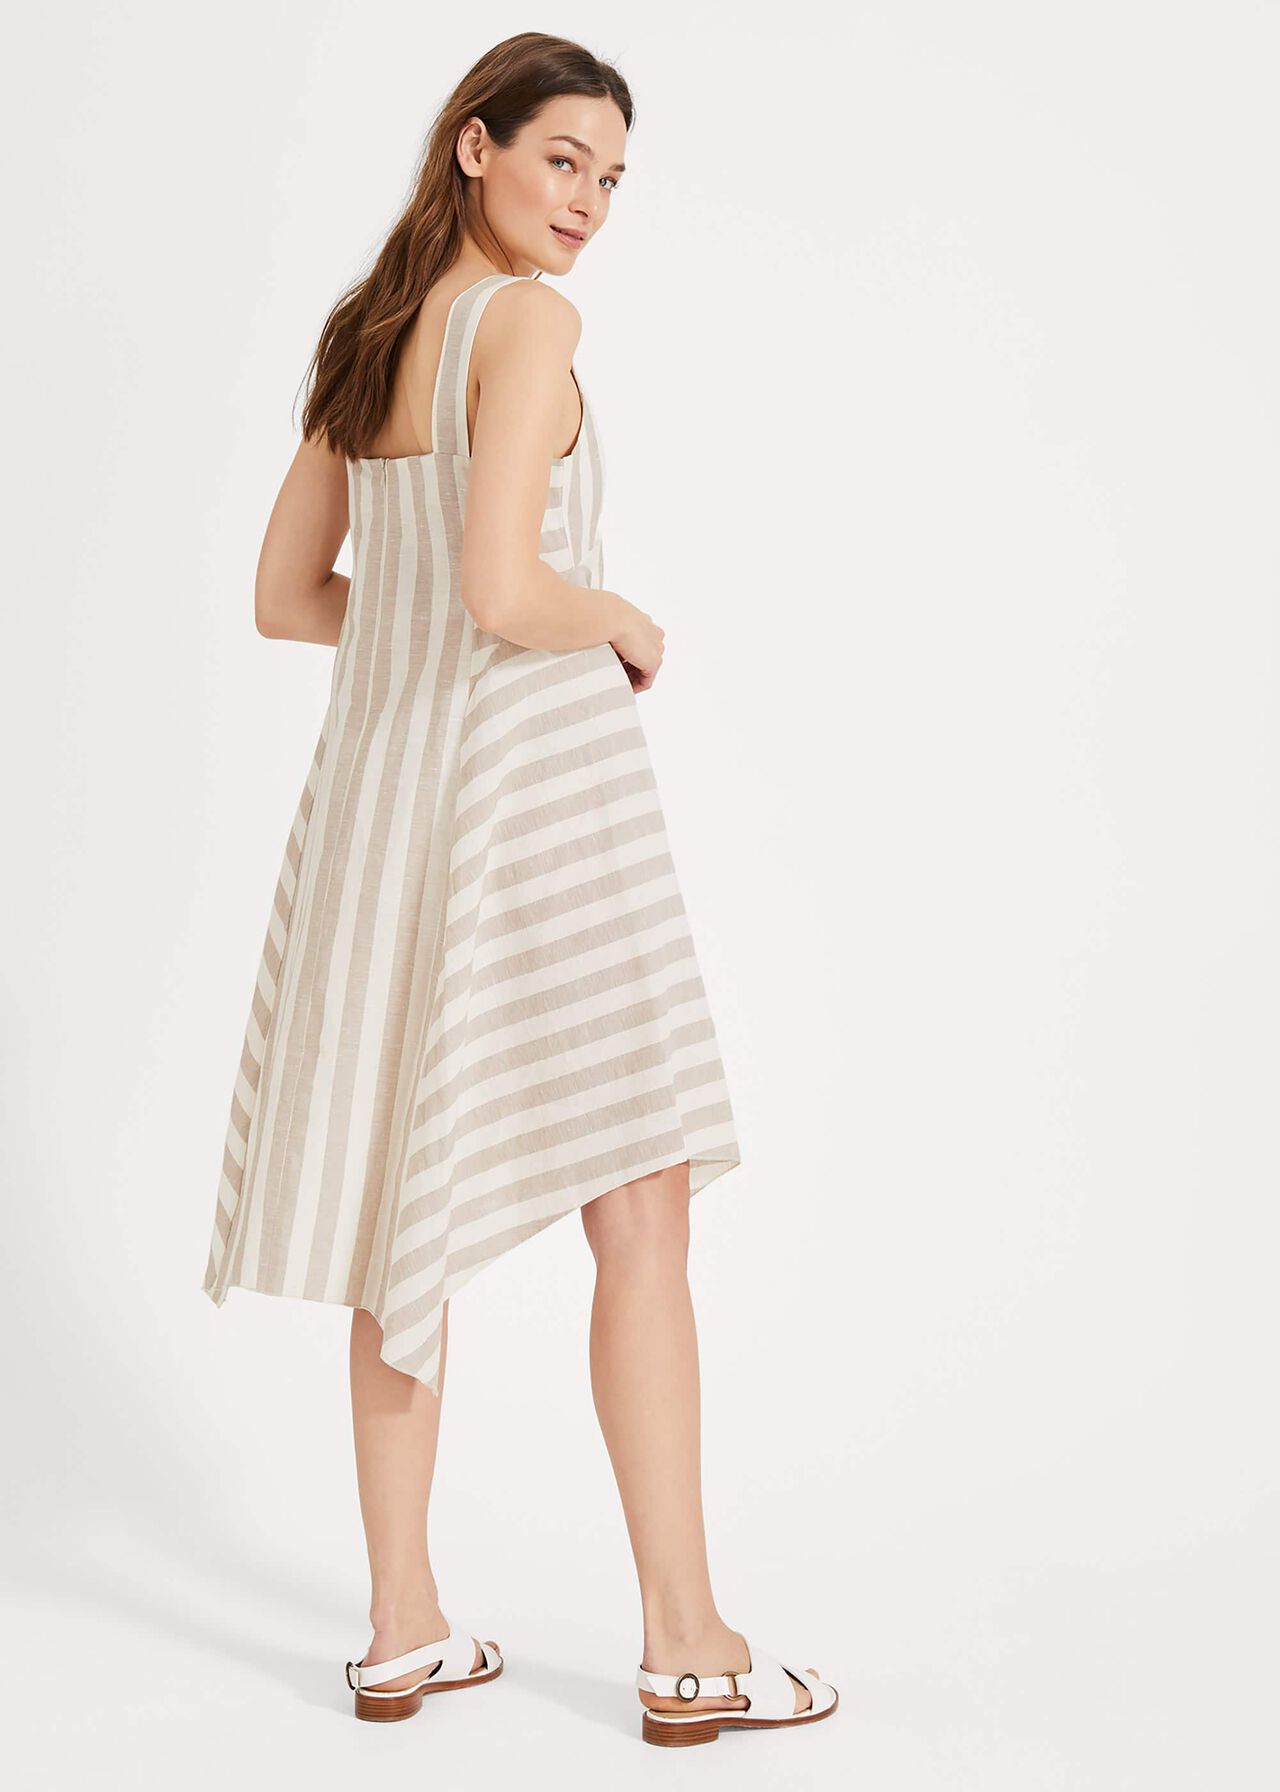 Susie Linen Stripe Dress